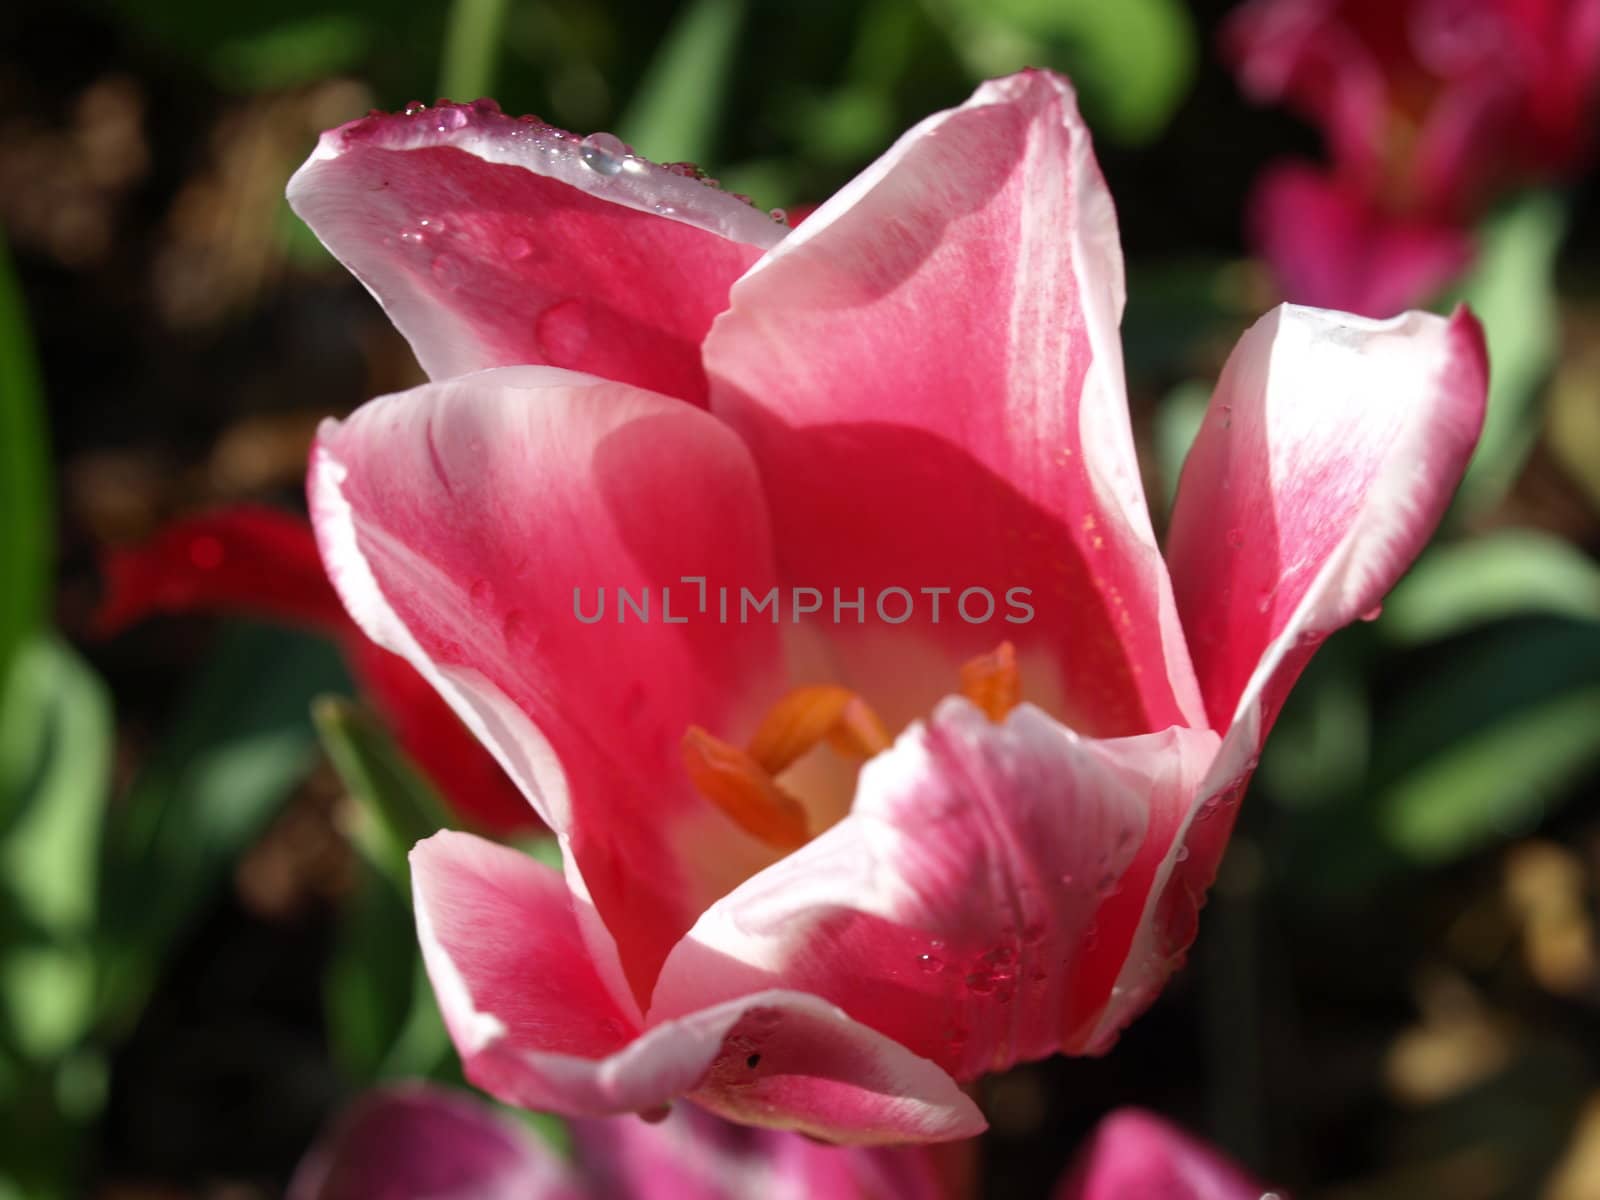 Pink tulip up close after a rainy night